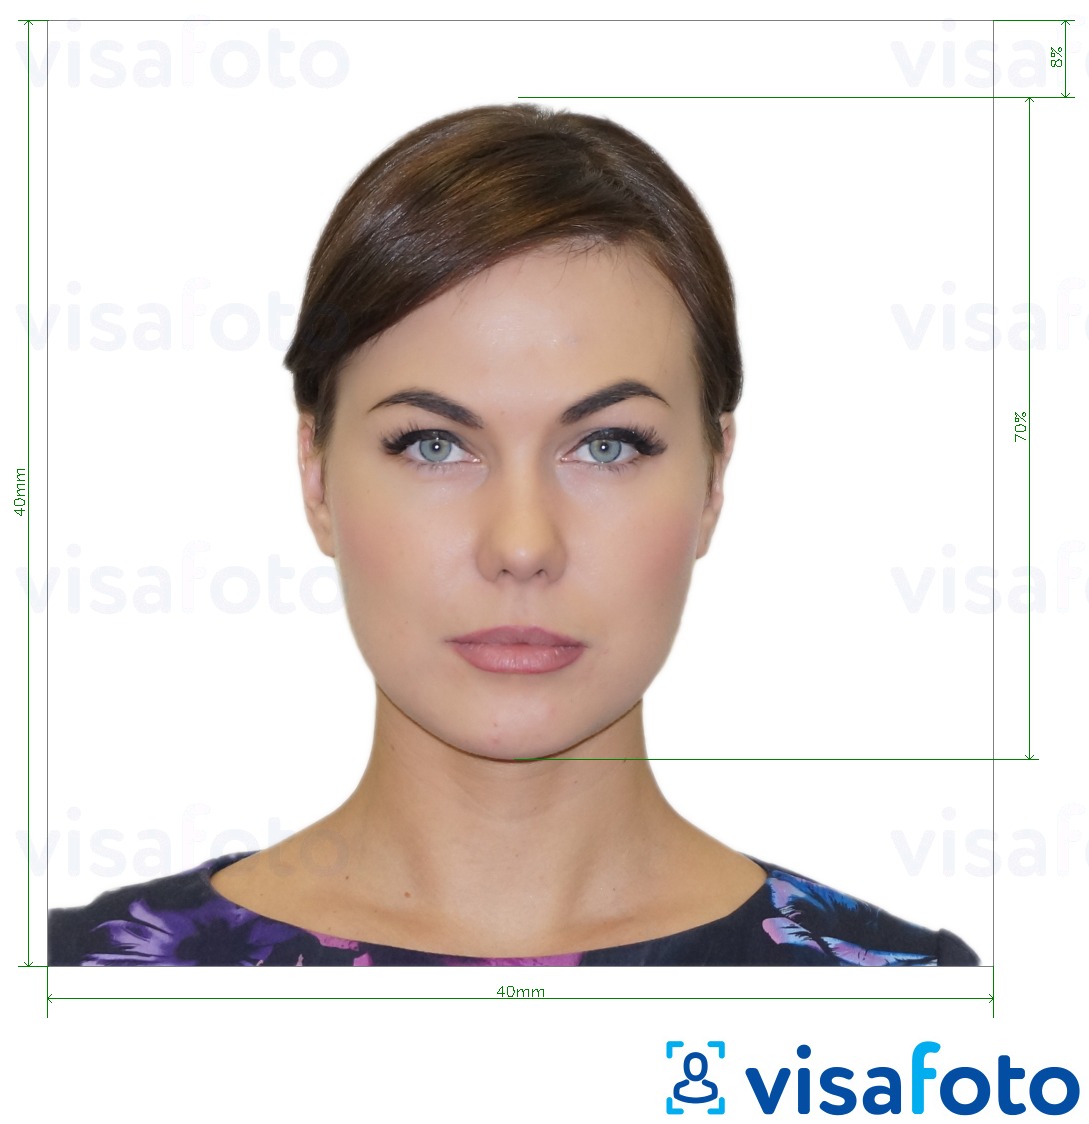 Exemples sur des photos pour Passeport argentin 4x4 cm (40x40 mm) avec les spécifications de taille exactes